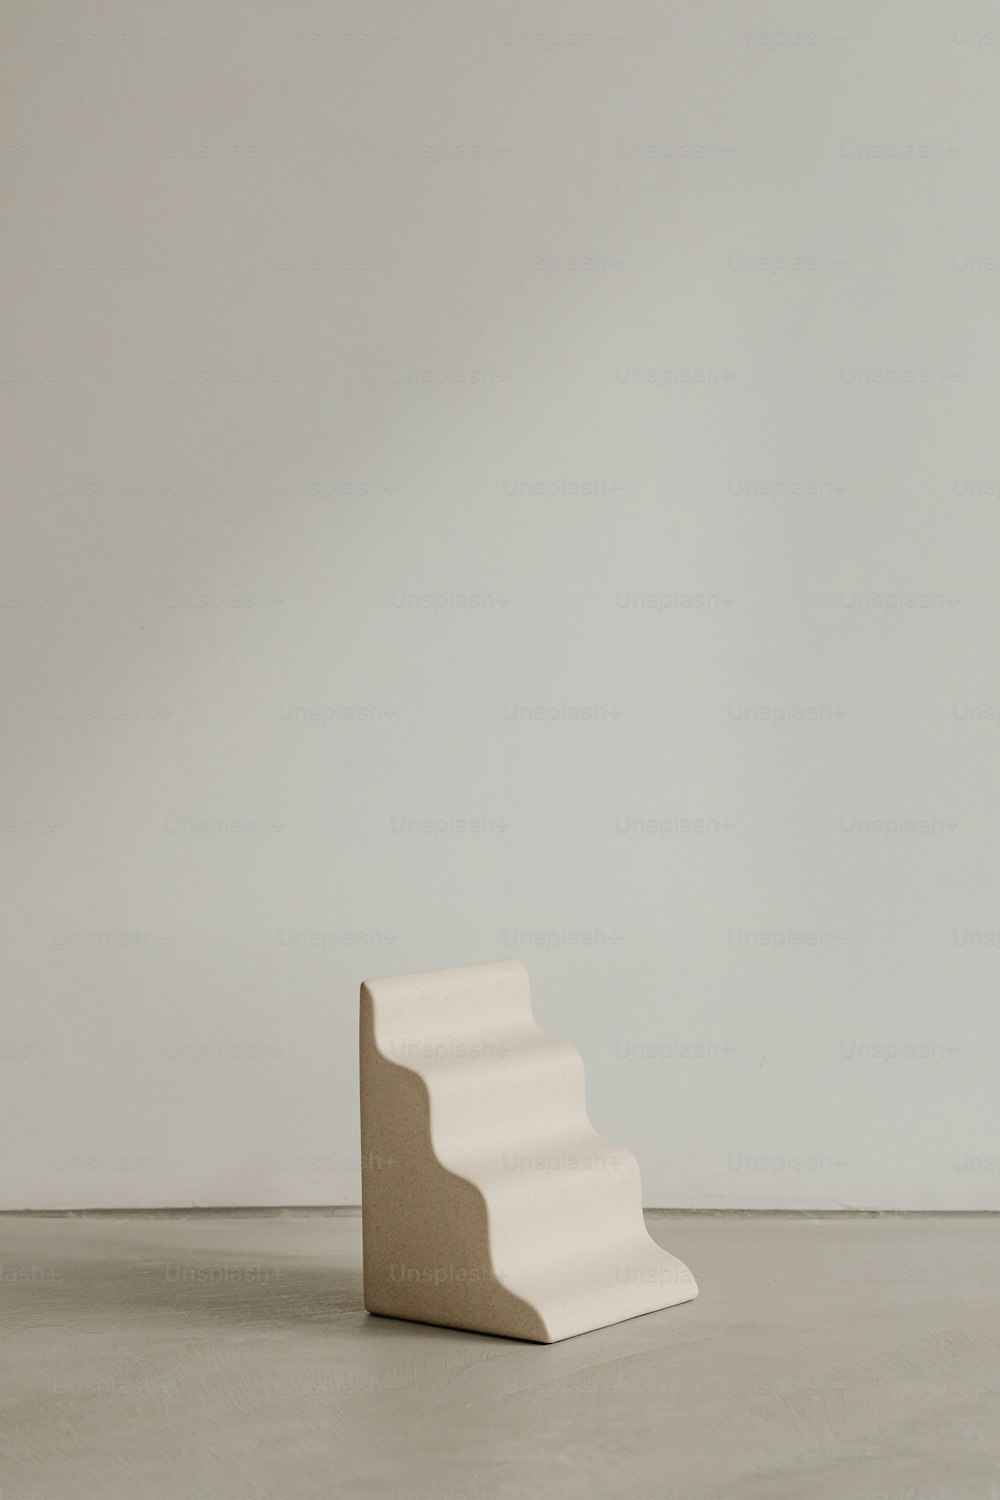 시멘트 바닥 위에 앉아 있는 하얀 조각품